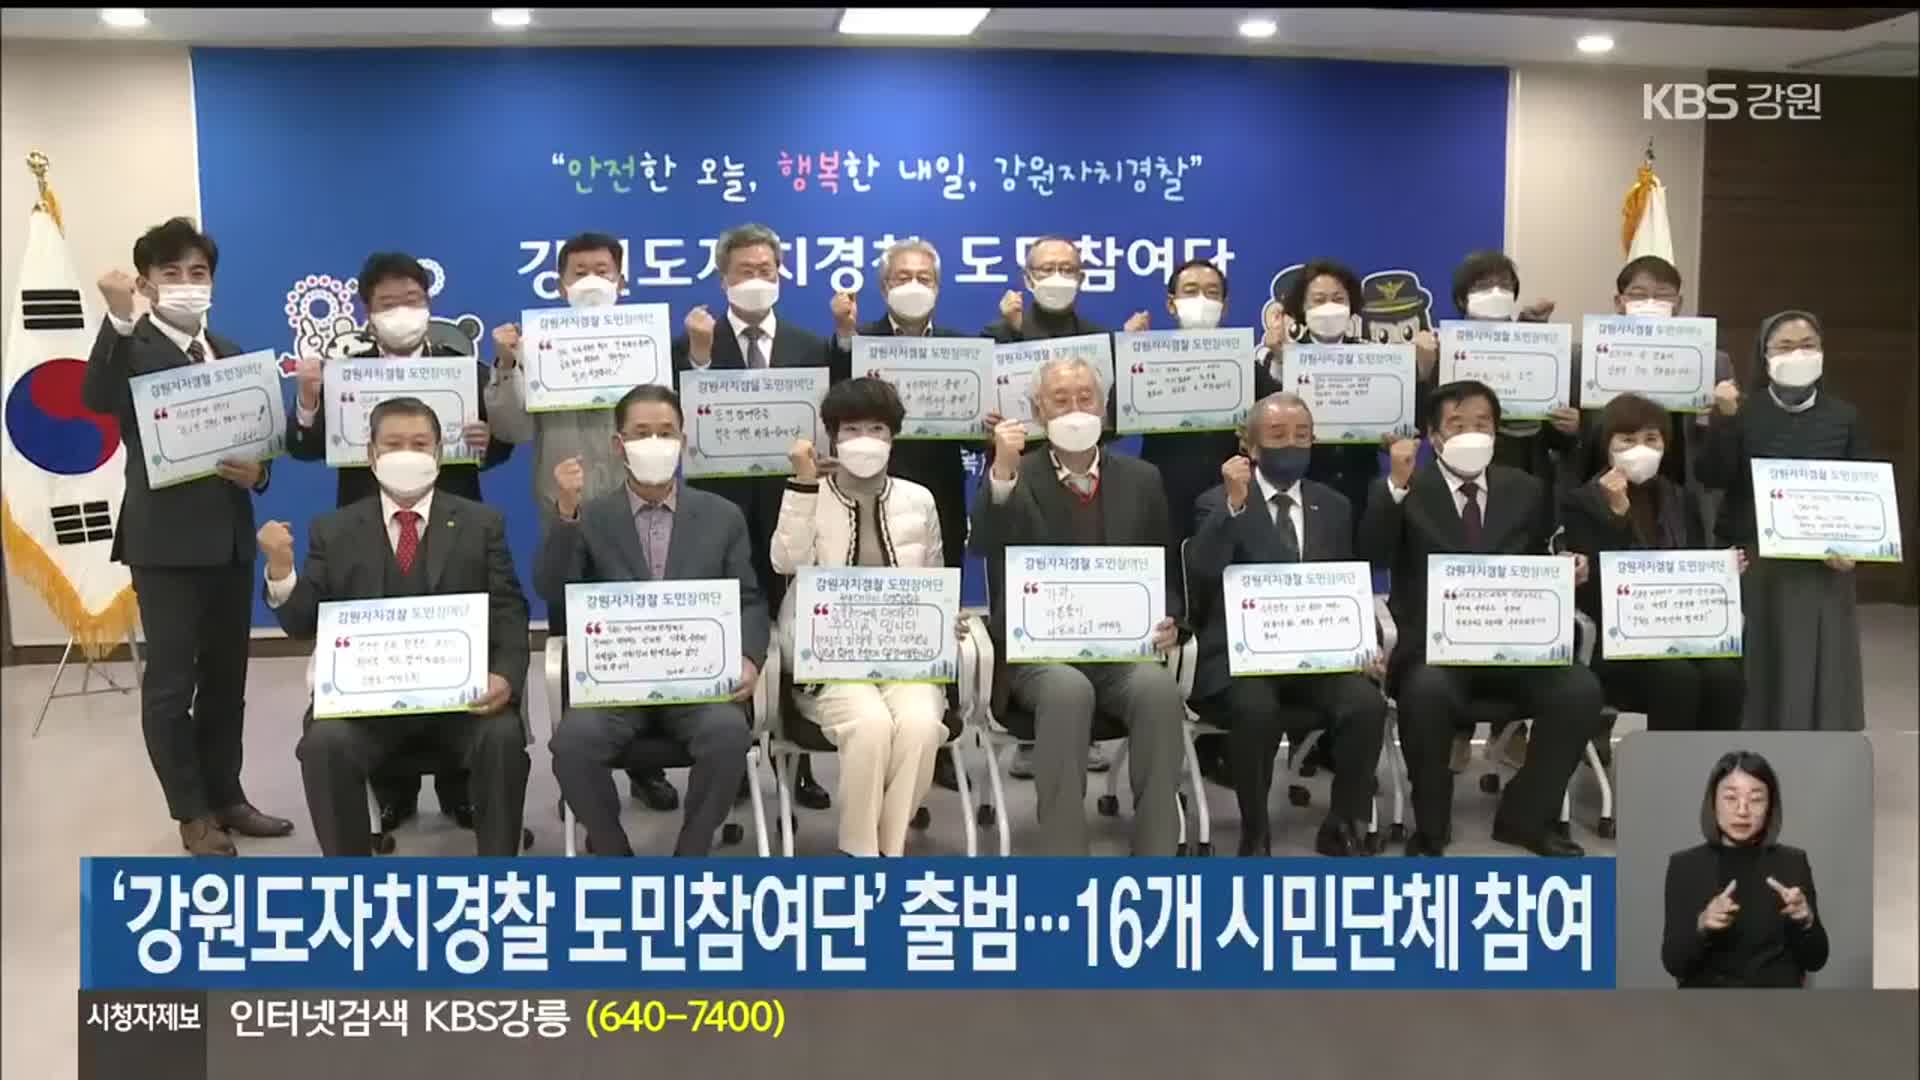 ‘강원도자치경찰 도민참여단’ 출범…16개 시민단체 참여